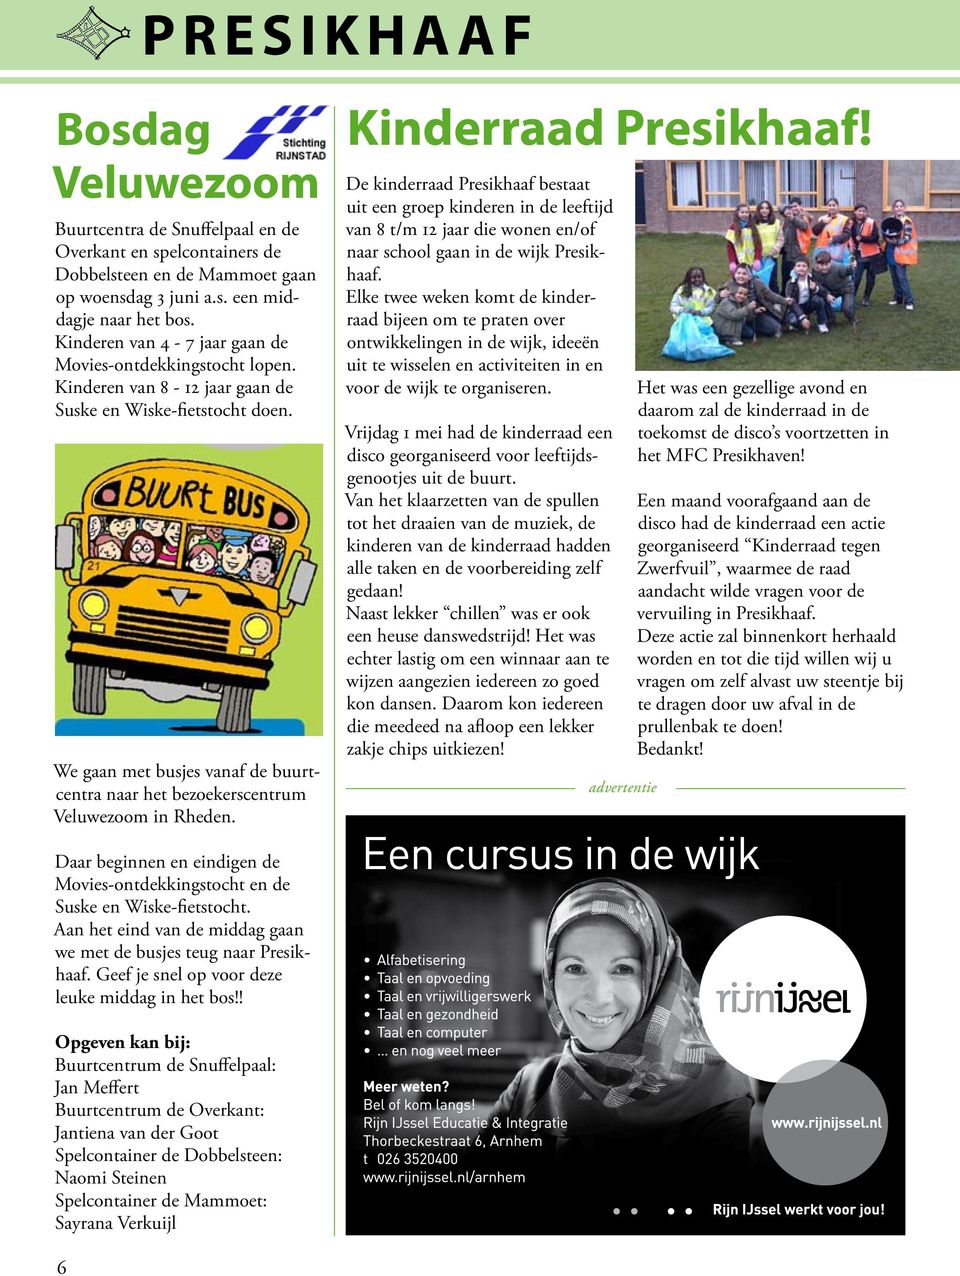 We gaan met busjes vanaf de buurtcentra naar het bezoekerscentrum Veluwezoom in Rheden. Kinderraad Presikhaaf!